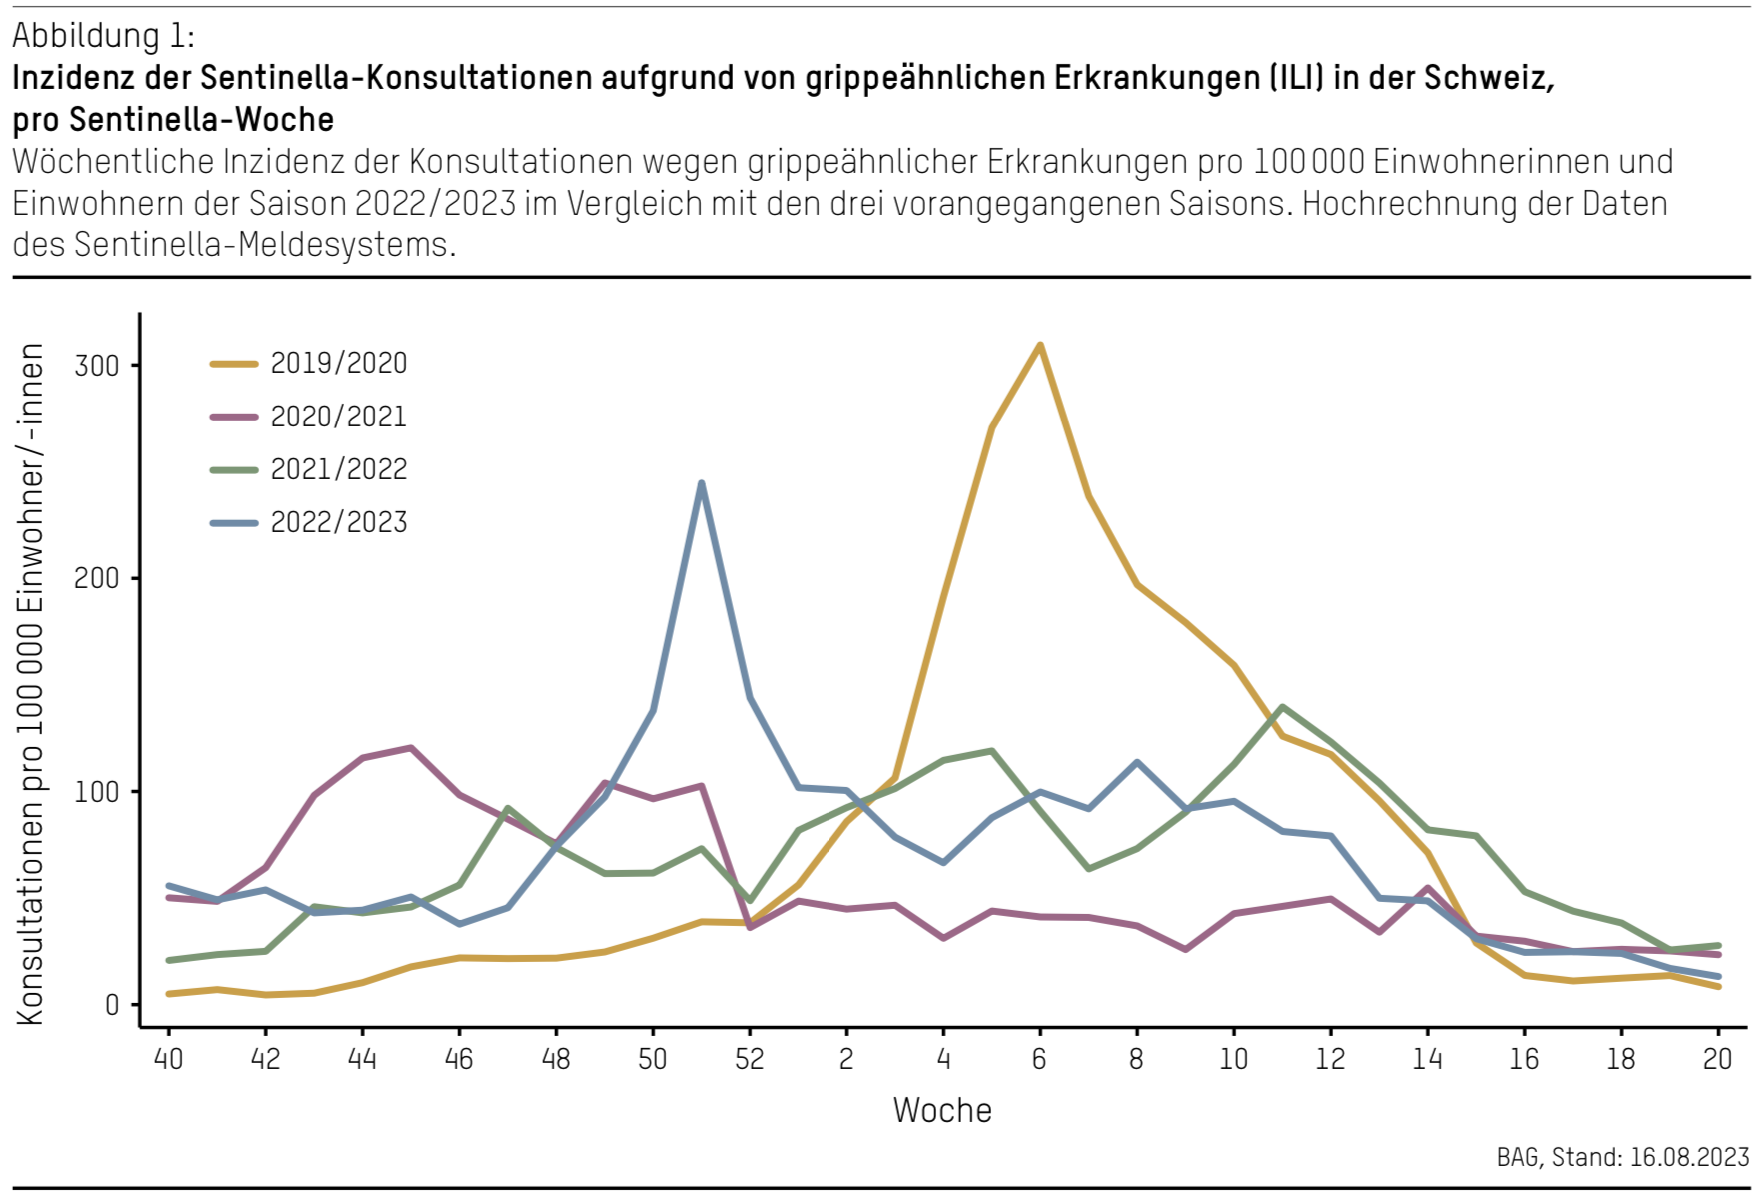 Inzidenz der Sentinella Konsultationen aufgrund von grippeähnlichen Erkrankungen ILI in der Schweiz pro Sentinella Woche